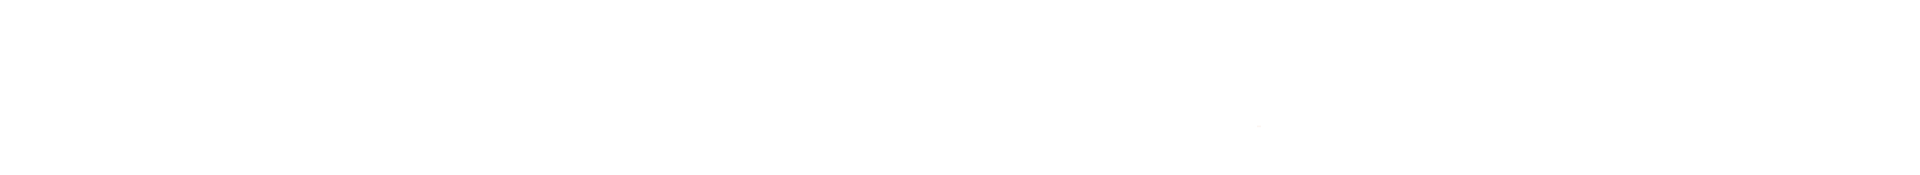 Devotion Design Client Logos